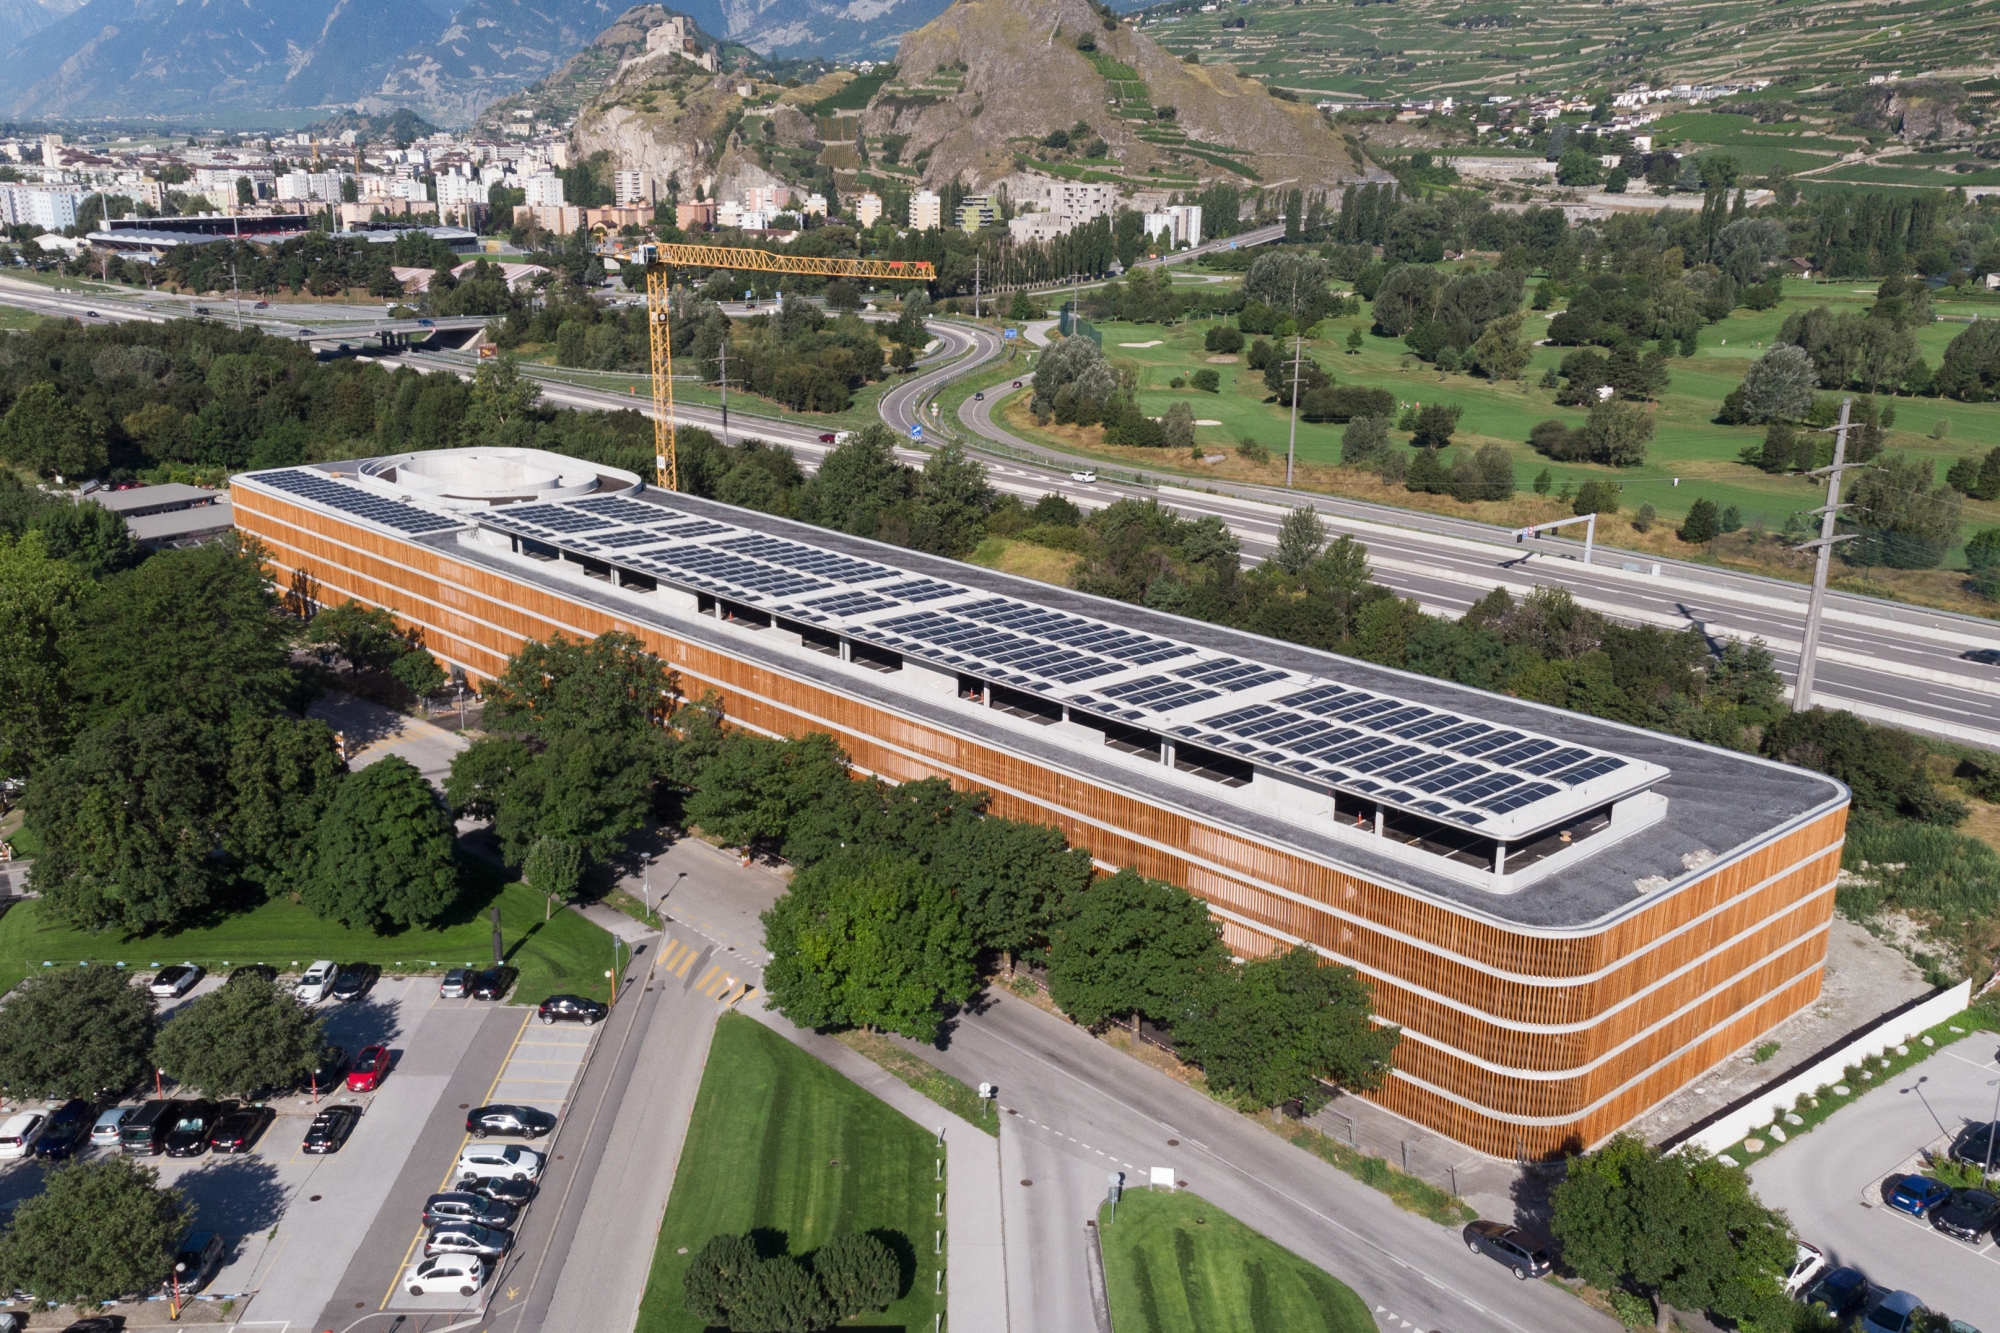 Le nouveau parking couvert de l’hôpital de Sion est terminé. L’ouvrage d’une capacité de 1’138 places sera progressivement ouvert au public dès le 1er septembre.